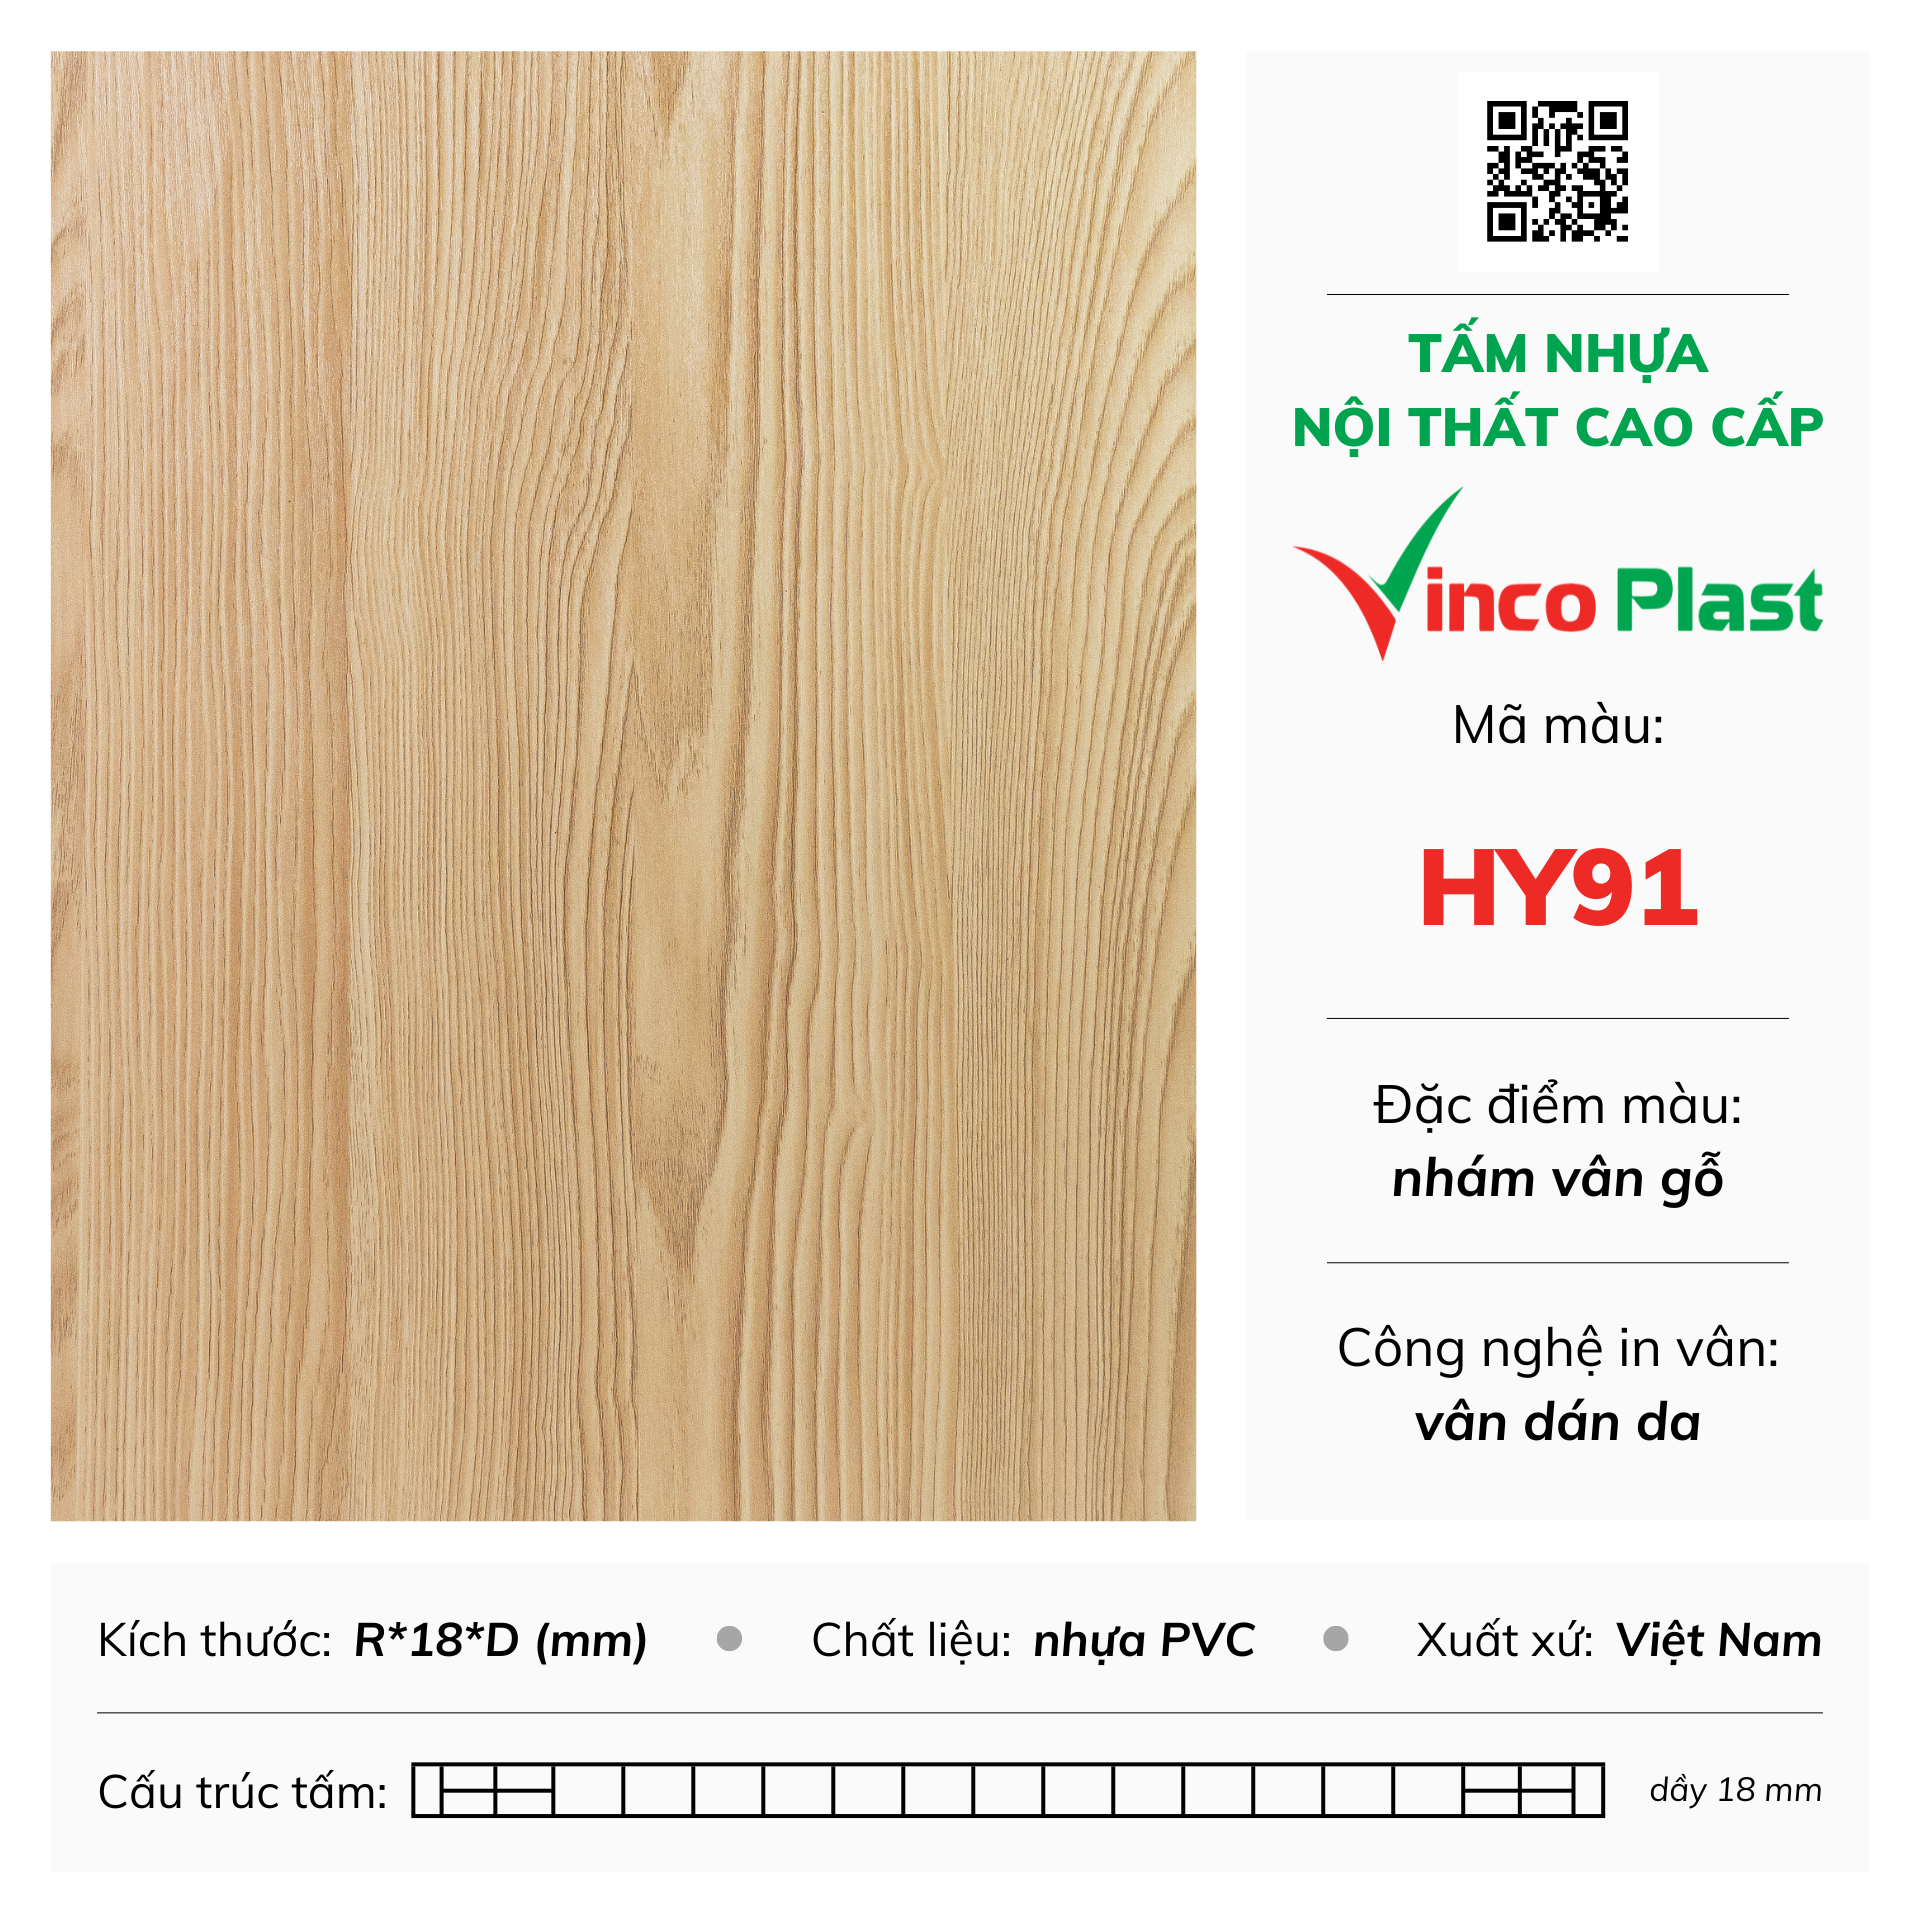 Tấm nhựa nội thất cao cấp Vincoplast màu hy91